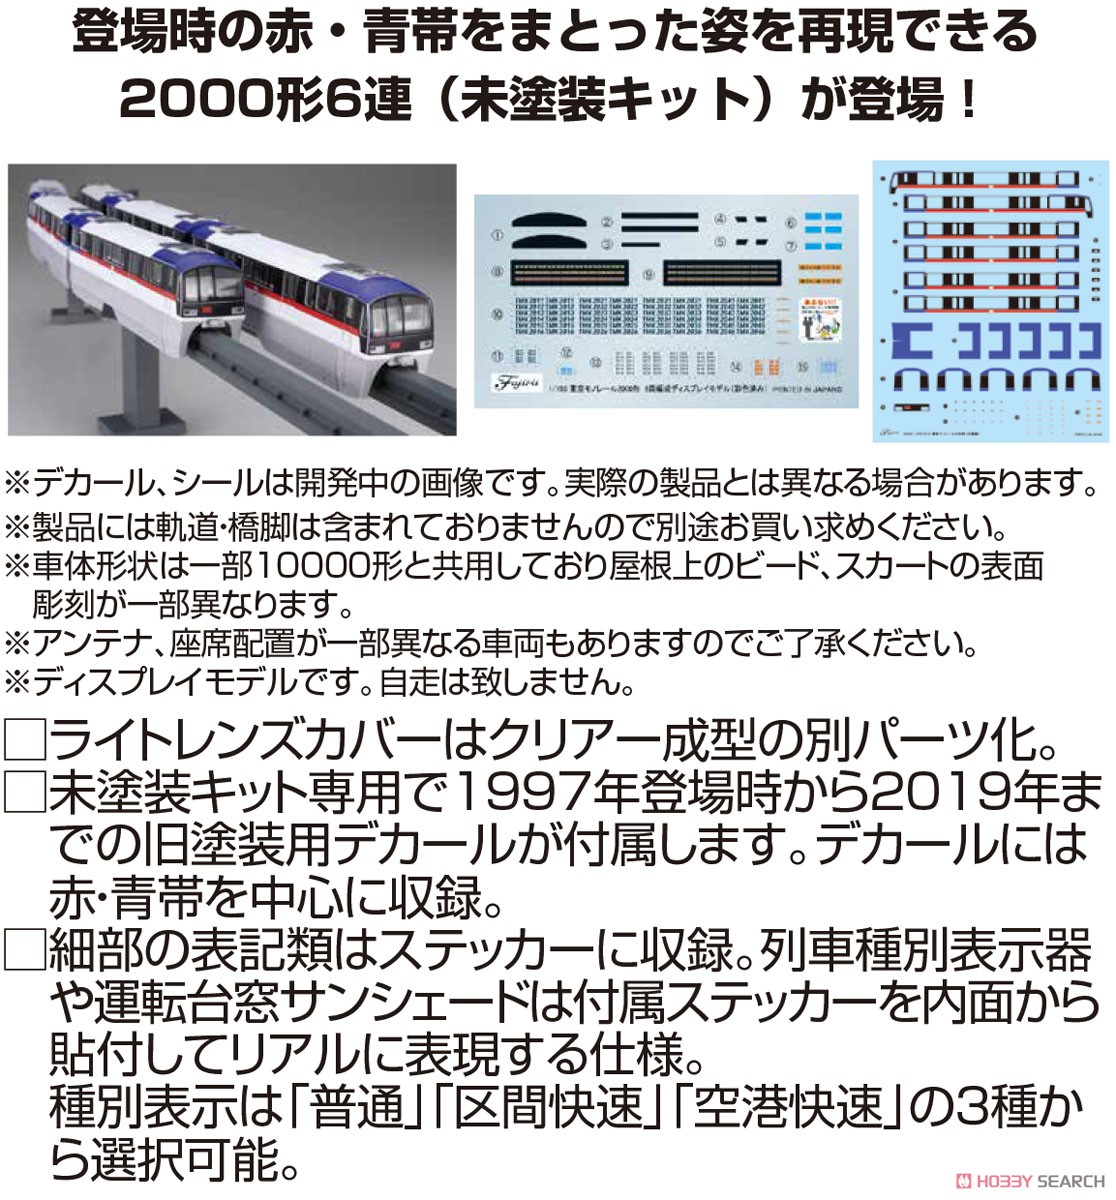 東京モノレール 2000形 旧塗装 6両編成ディスプレイモデル (未塗装キット) (6両セット) (組み立てキット) (鉄道模型) その他の画像3